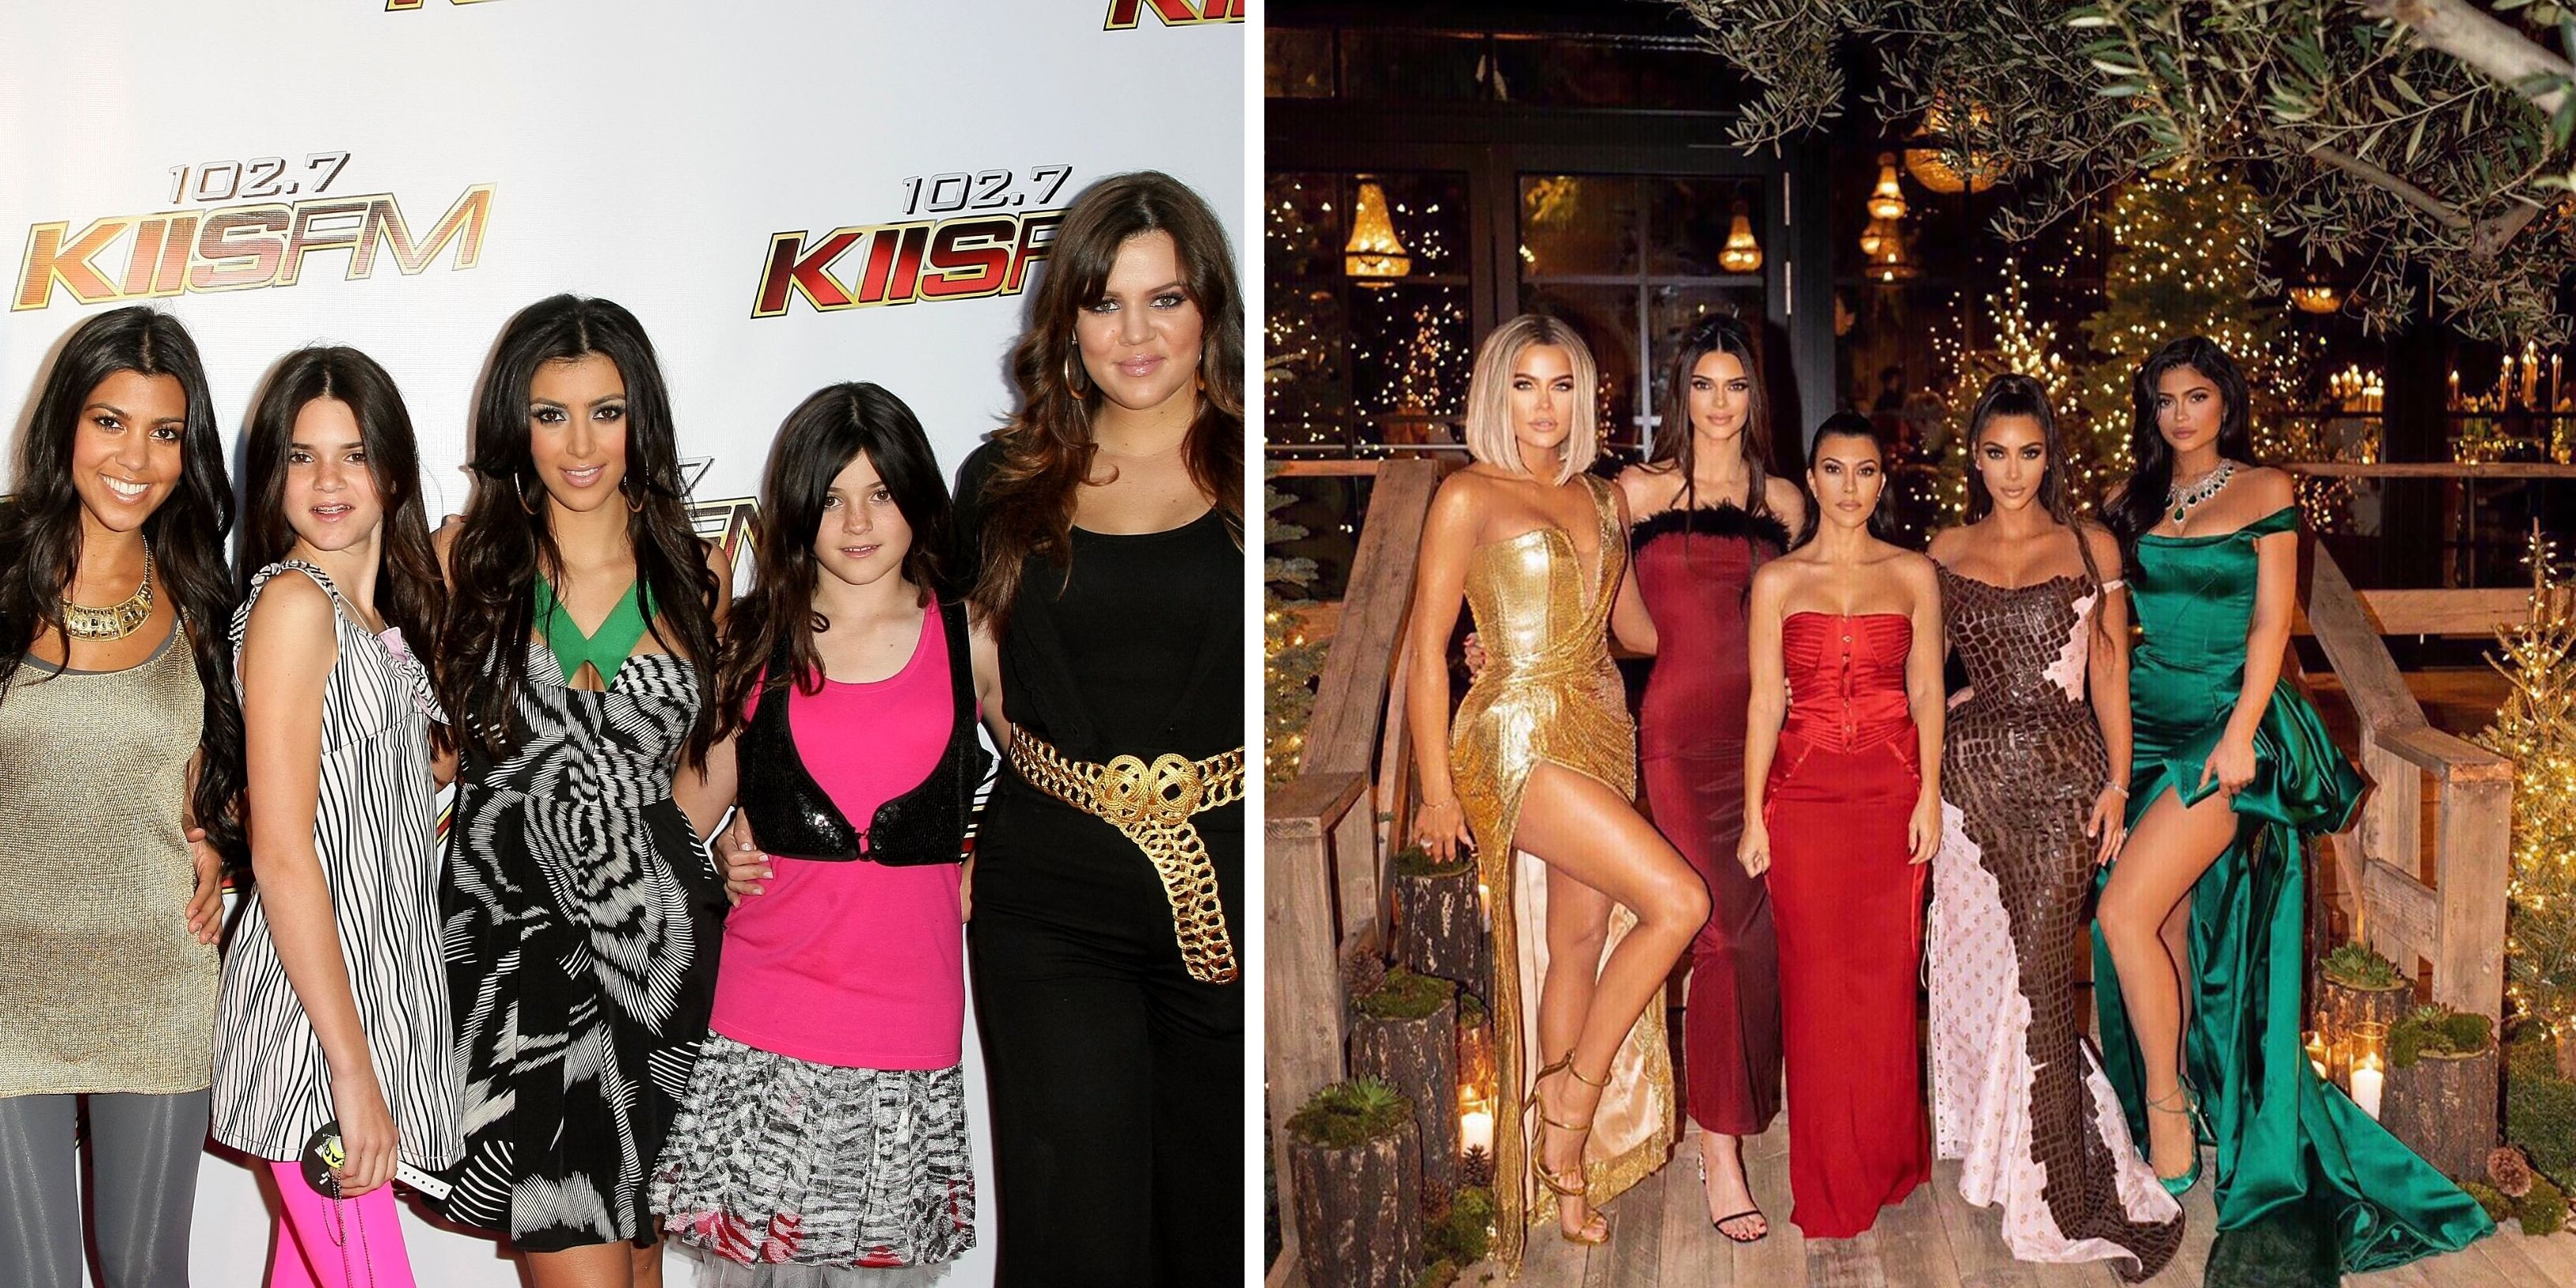 Estas fotos mostram o quanto o estilo do clã Kardashian-Jenners evoluiu